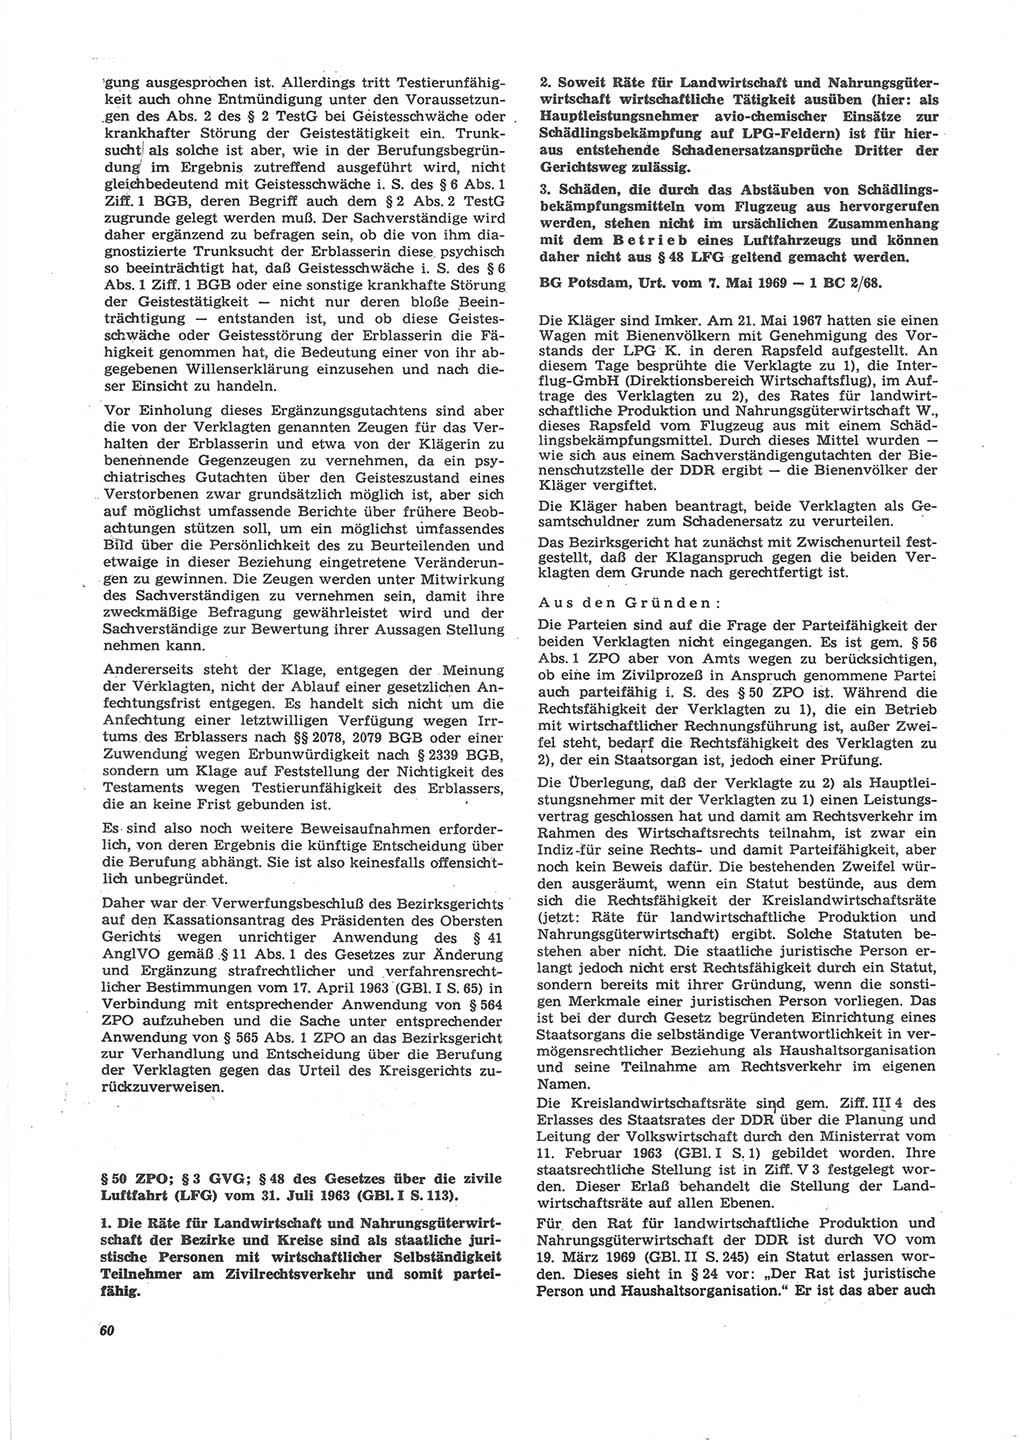 Neue Justiz (NJ), Zeitschrift für Recht und Rechtswissenschaft [Deutsche Demokratische Republik (DDR)], 24. Jahrgang 1970, Seite 60 (NJ DDR 1970, S. 60)